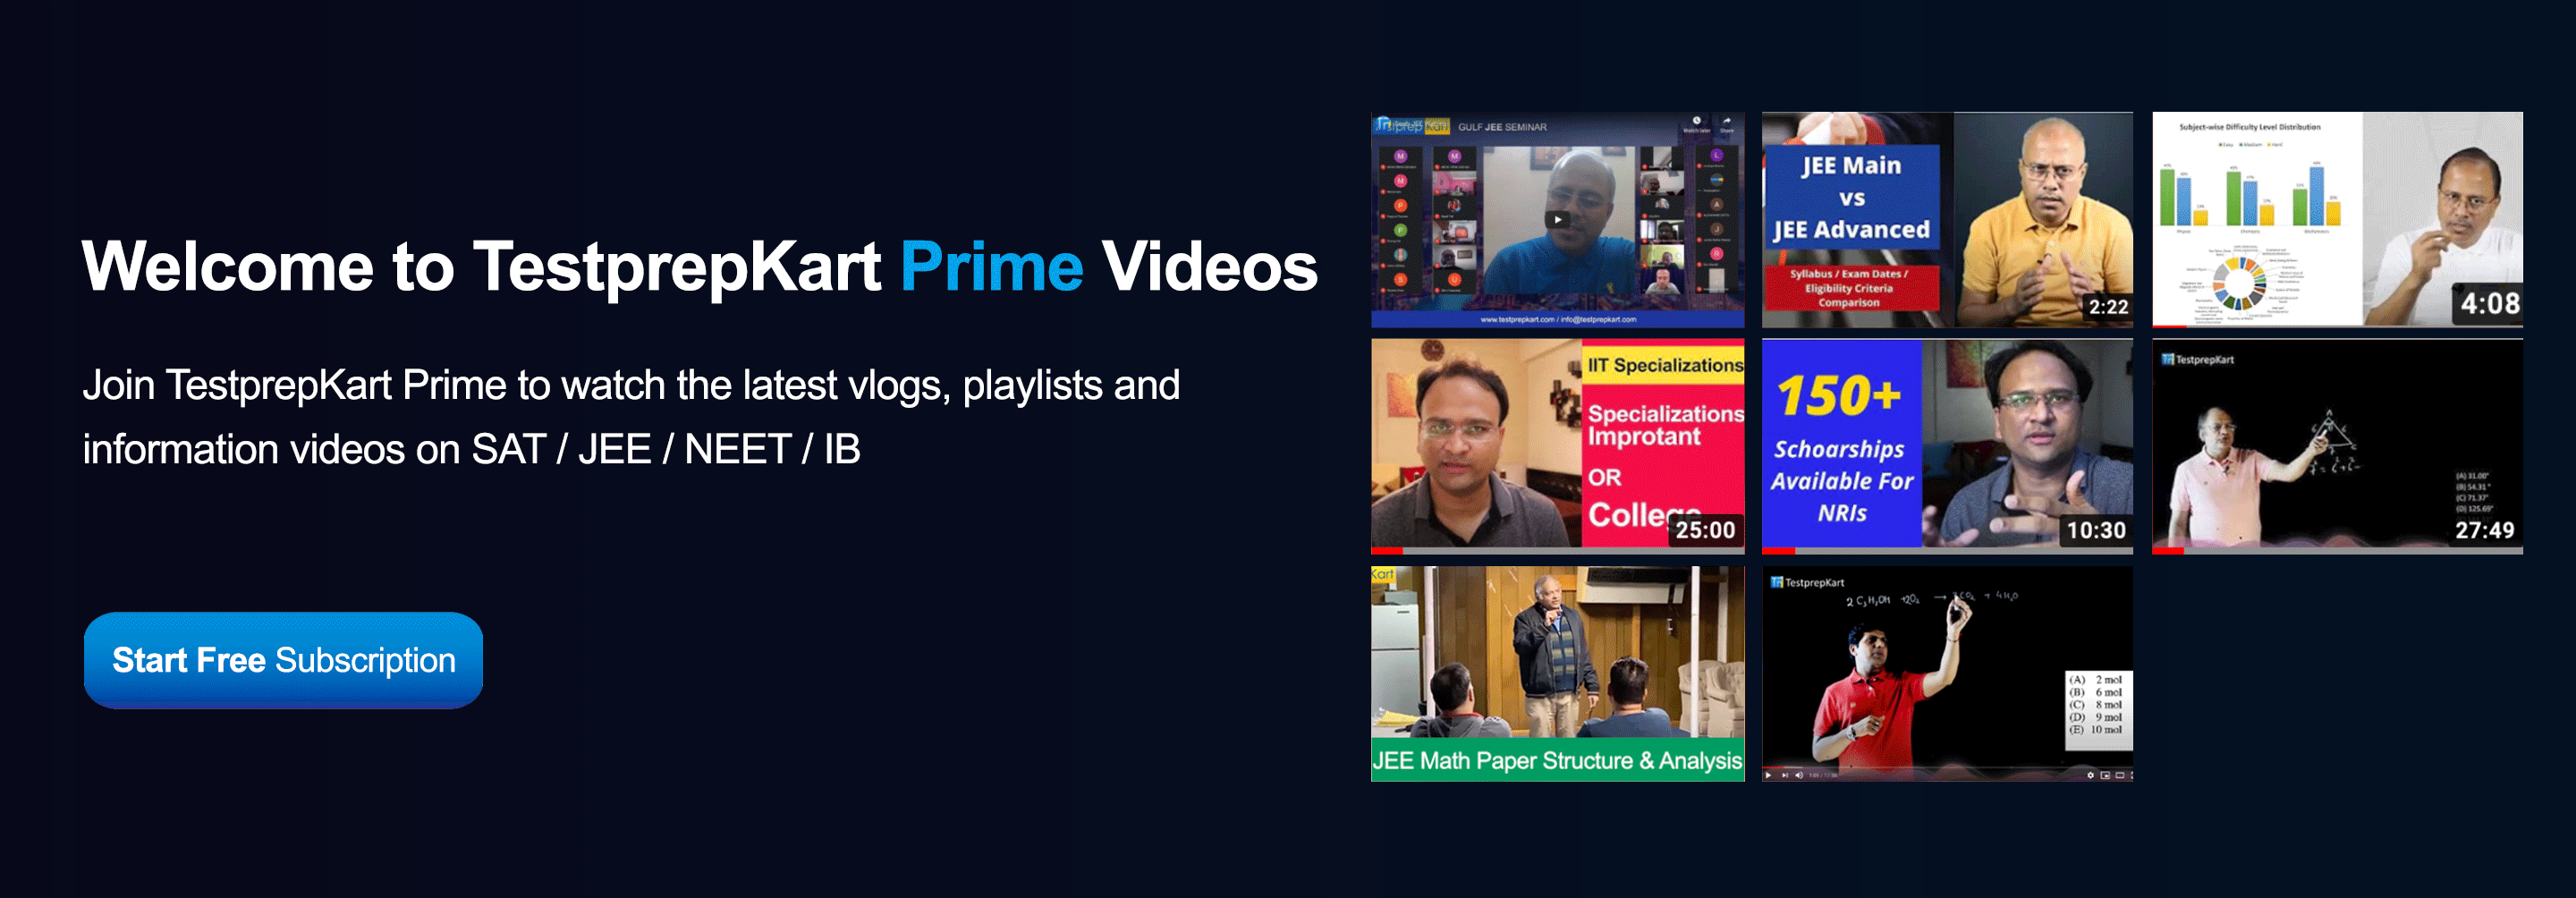 TestprepKart-Prime-Videos-Banner